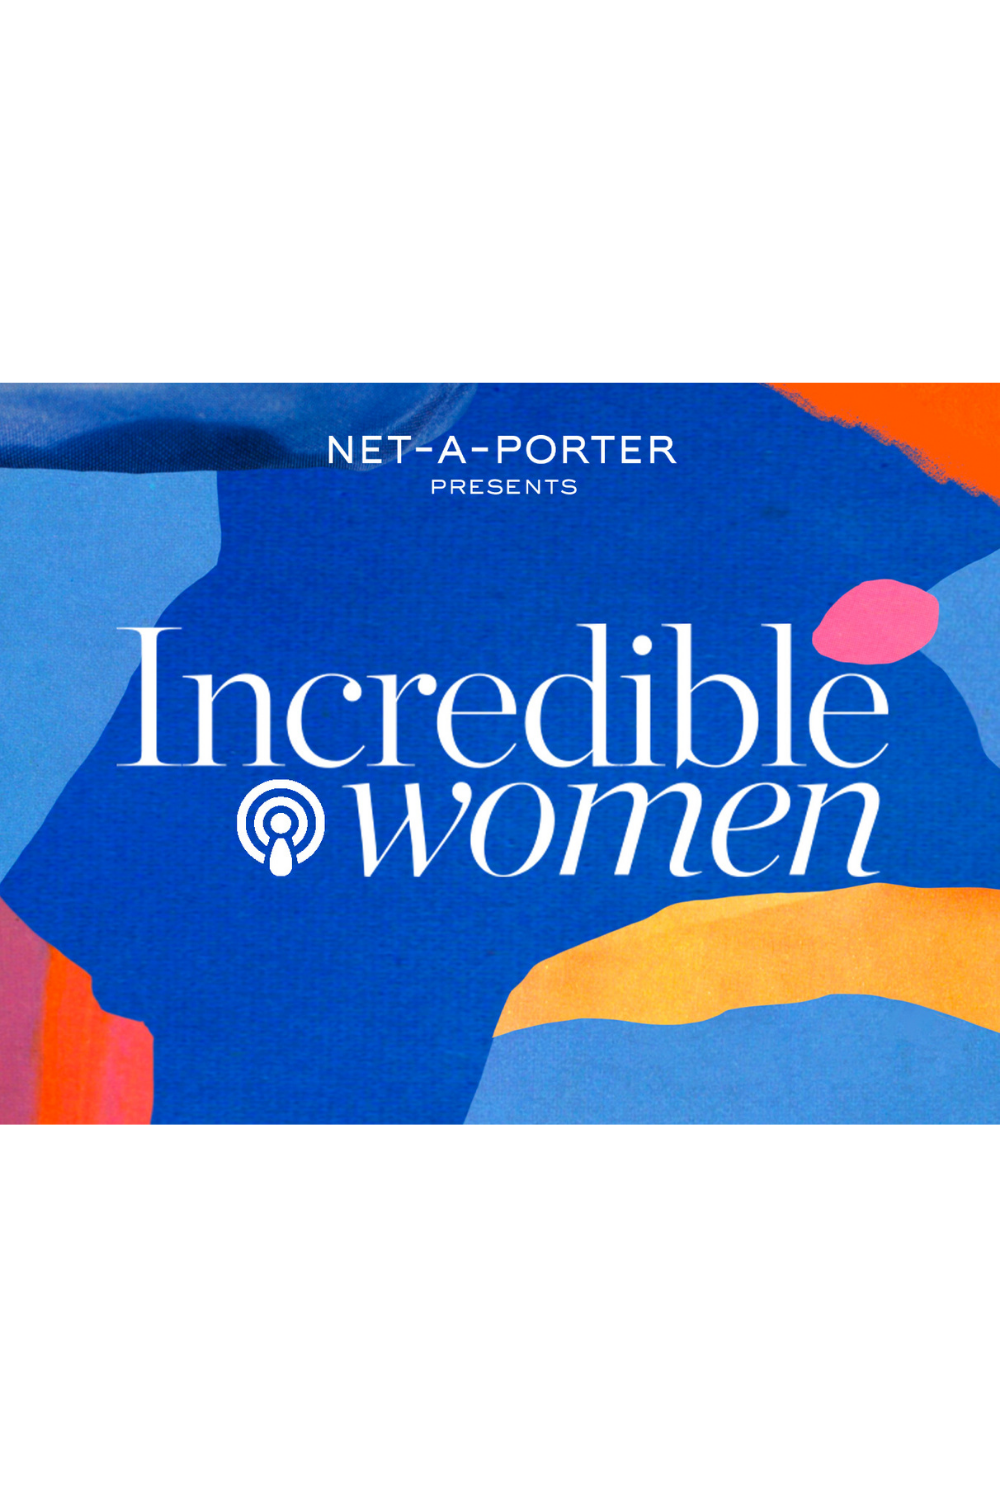 NET-A-PORTER Incredible Women Podcast - feminist books